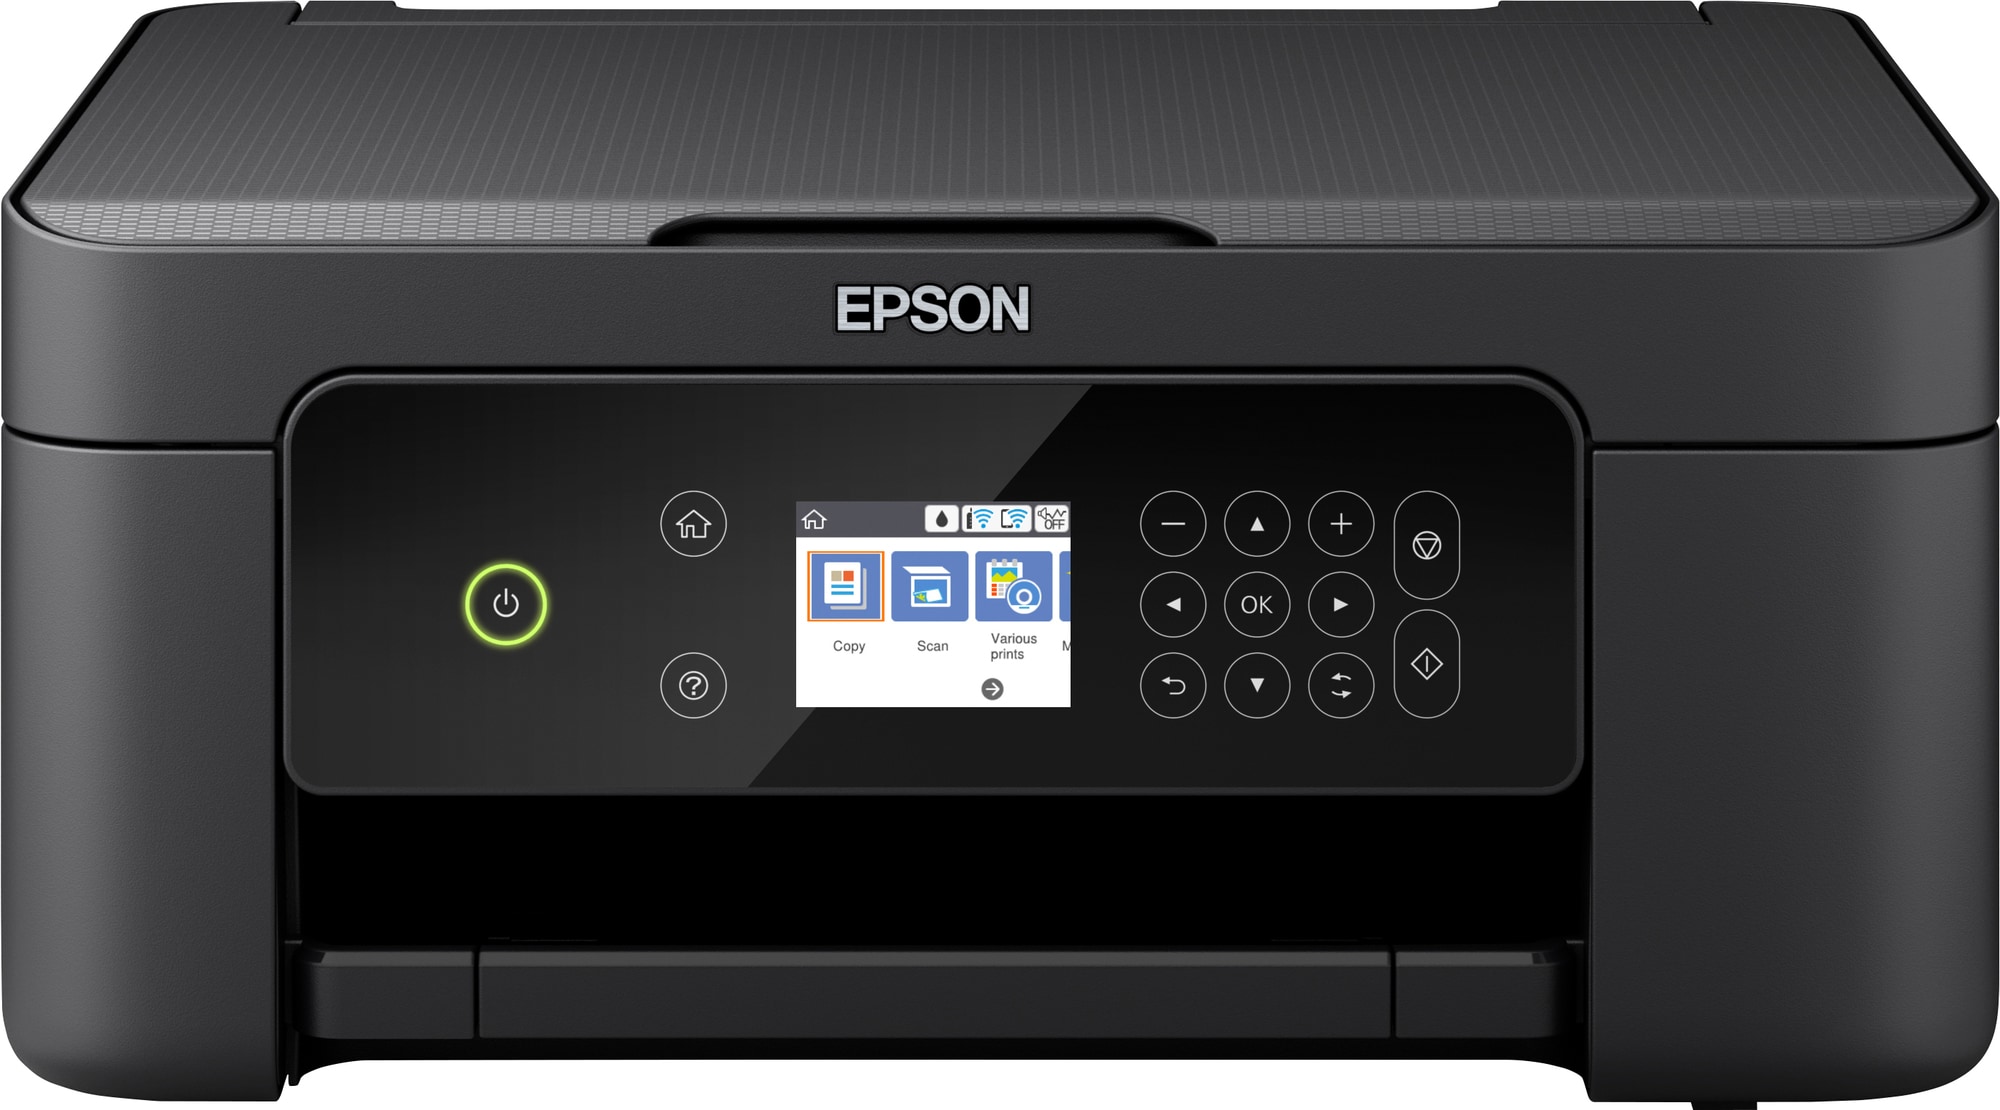 metan Prisnedsættelse løn Epson Expression Home XP-4100 inkjet printer (sort) | Elgiganten